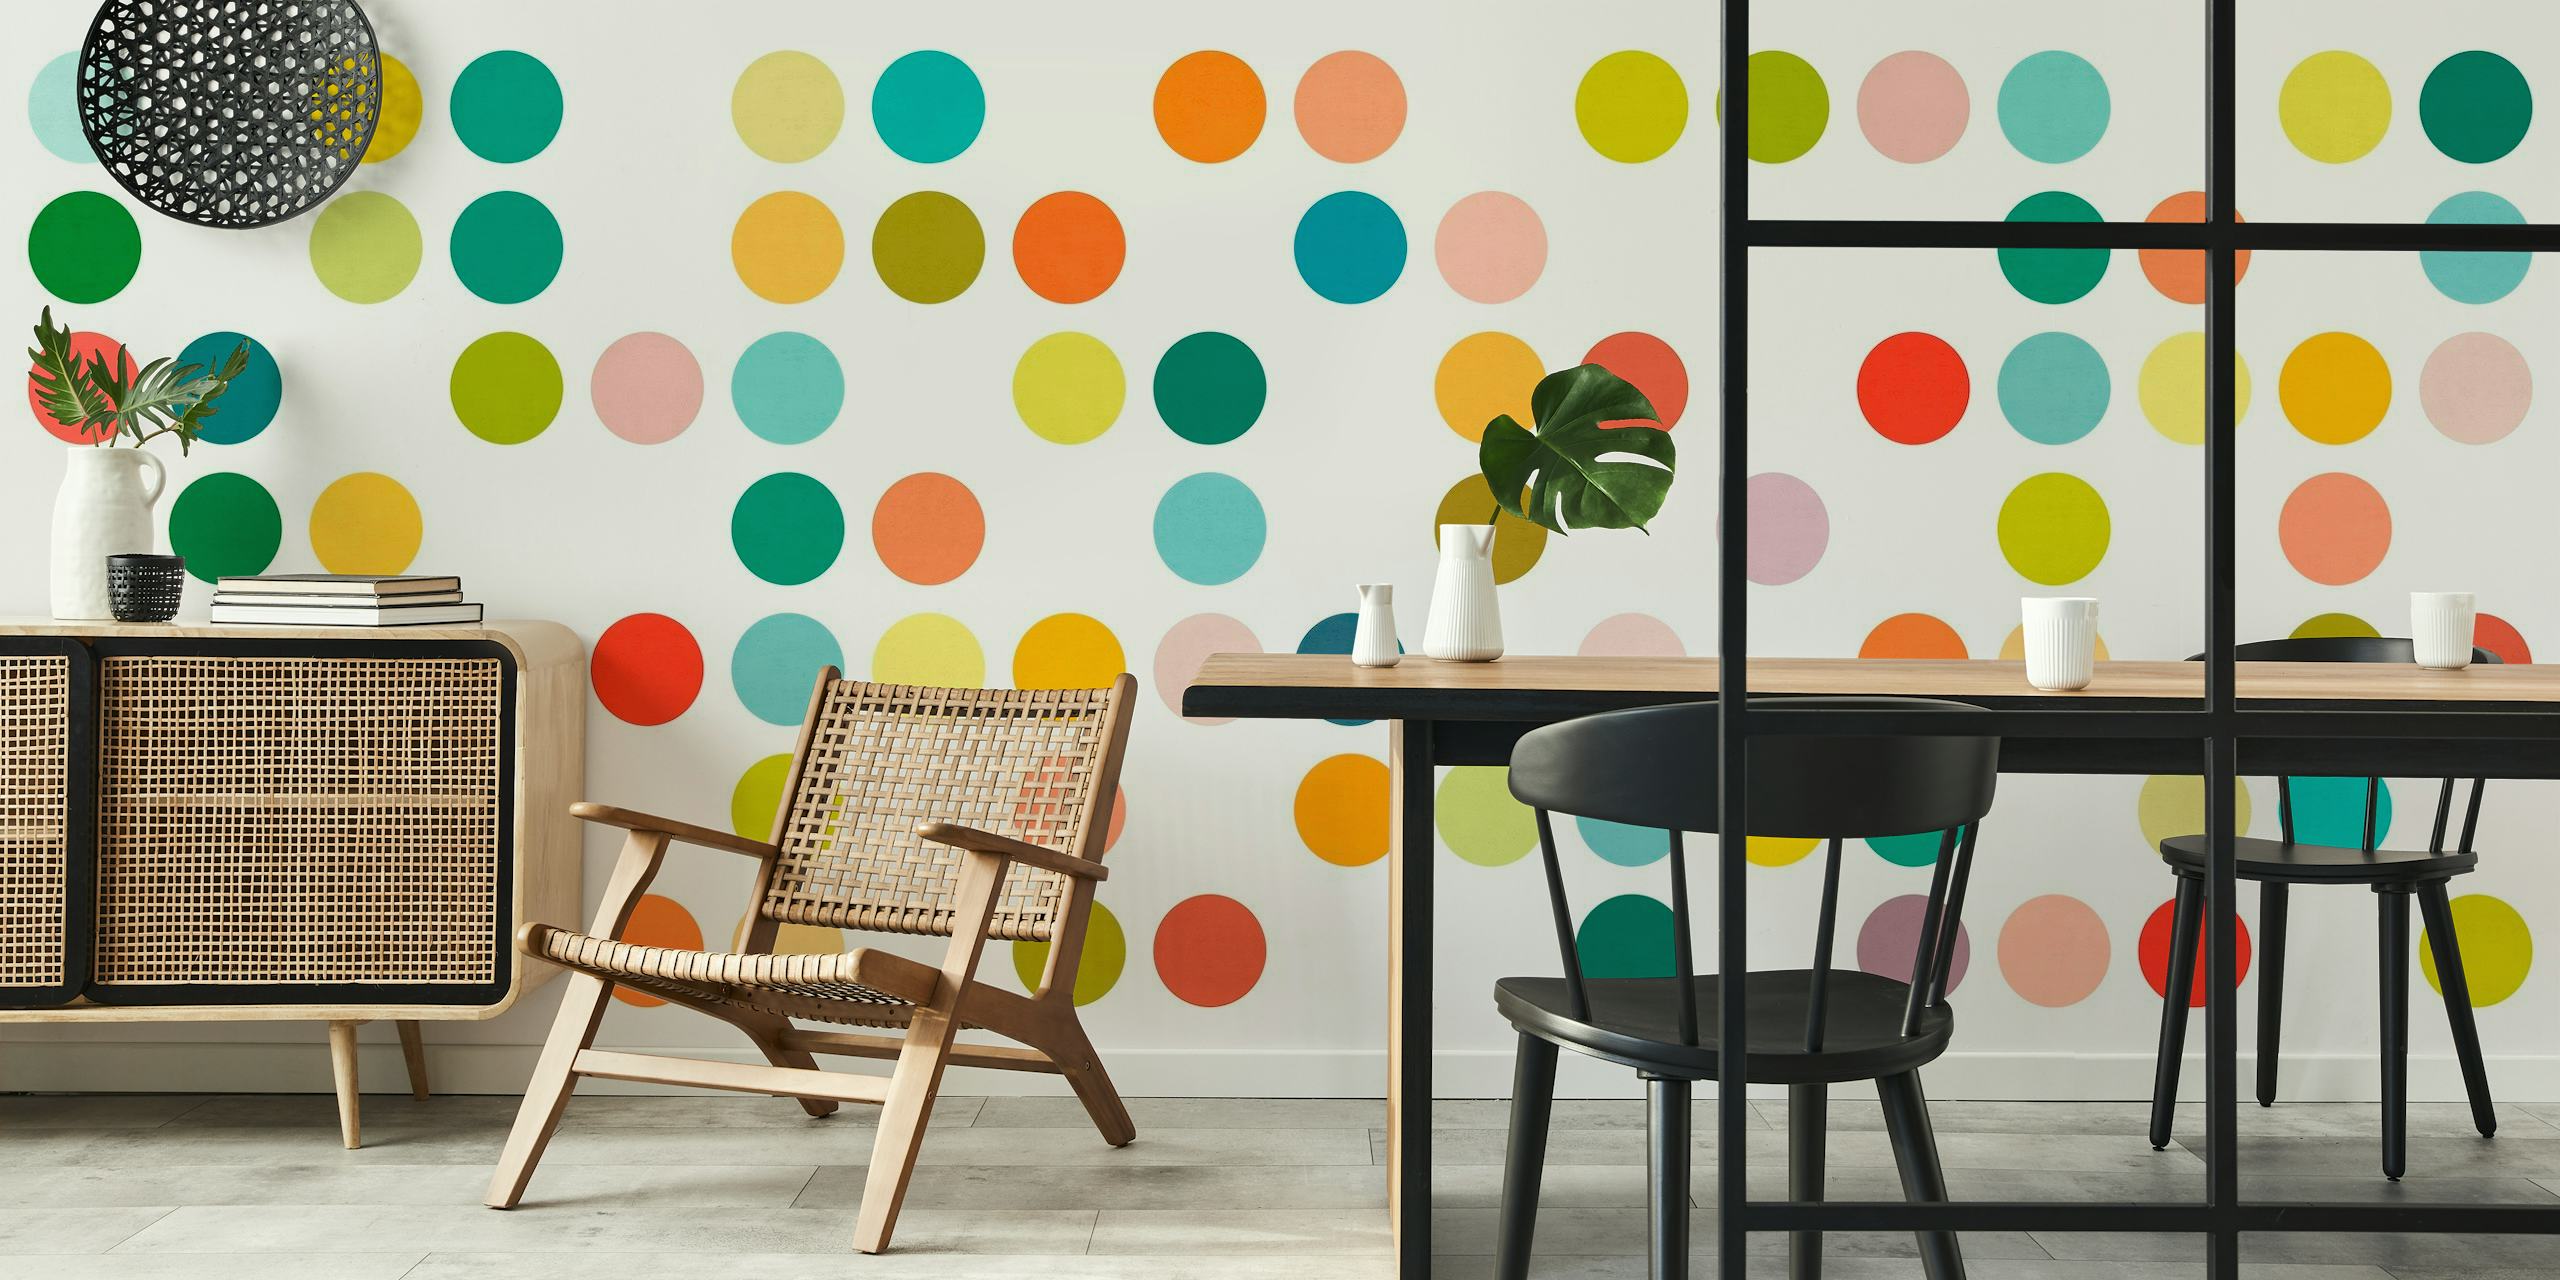 Fotomural vinílico de parede colorido com padrão de pontos e círculos de vários tamanhos em tons variados